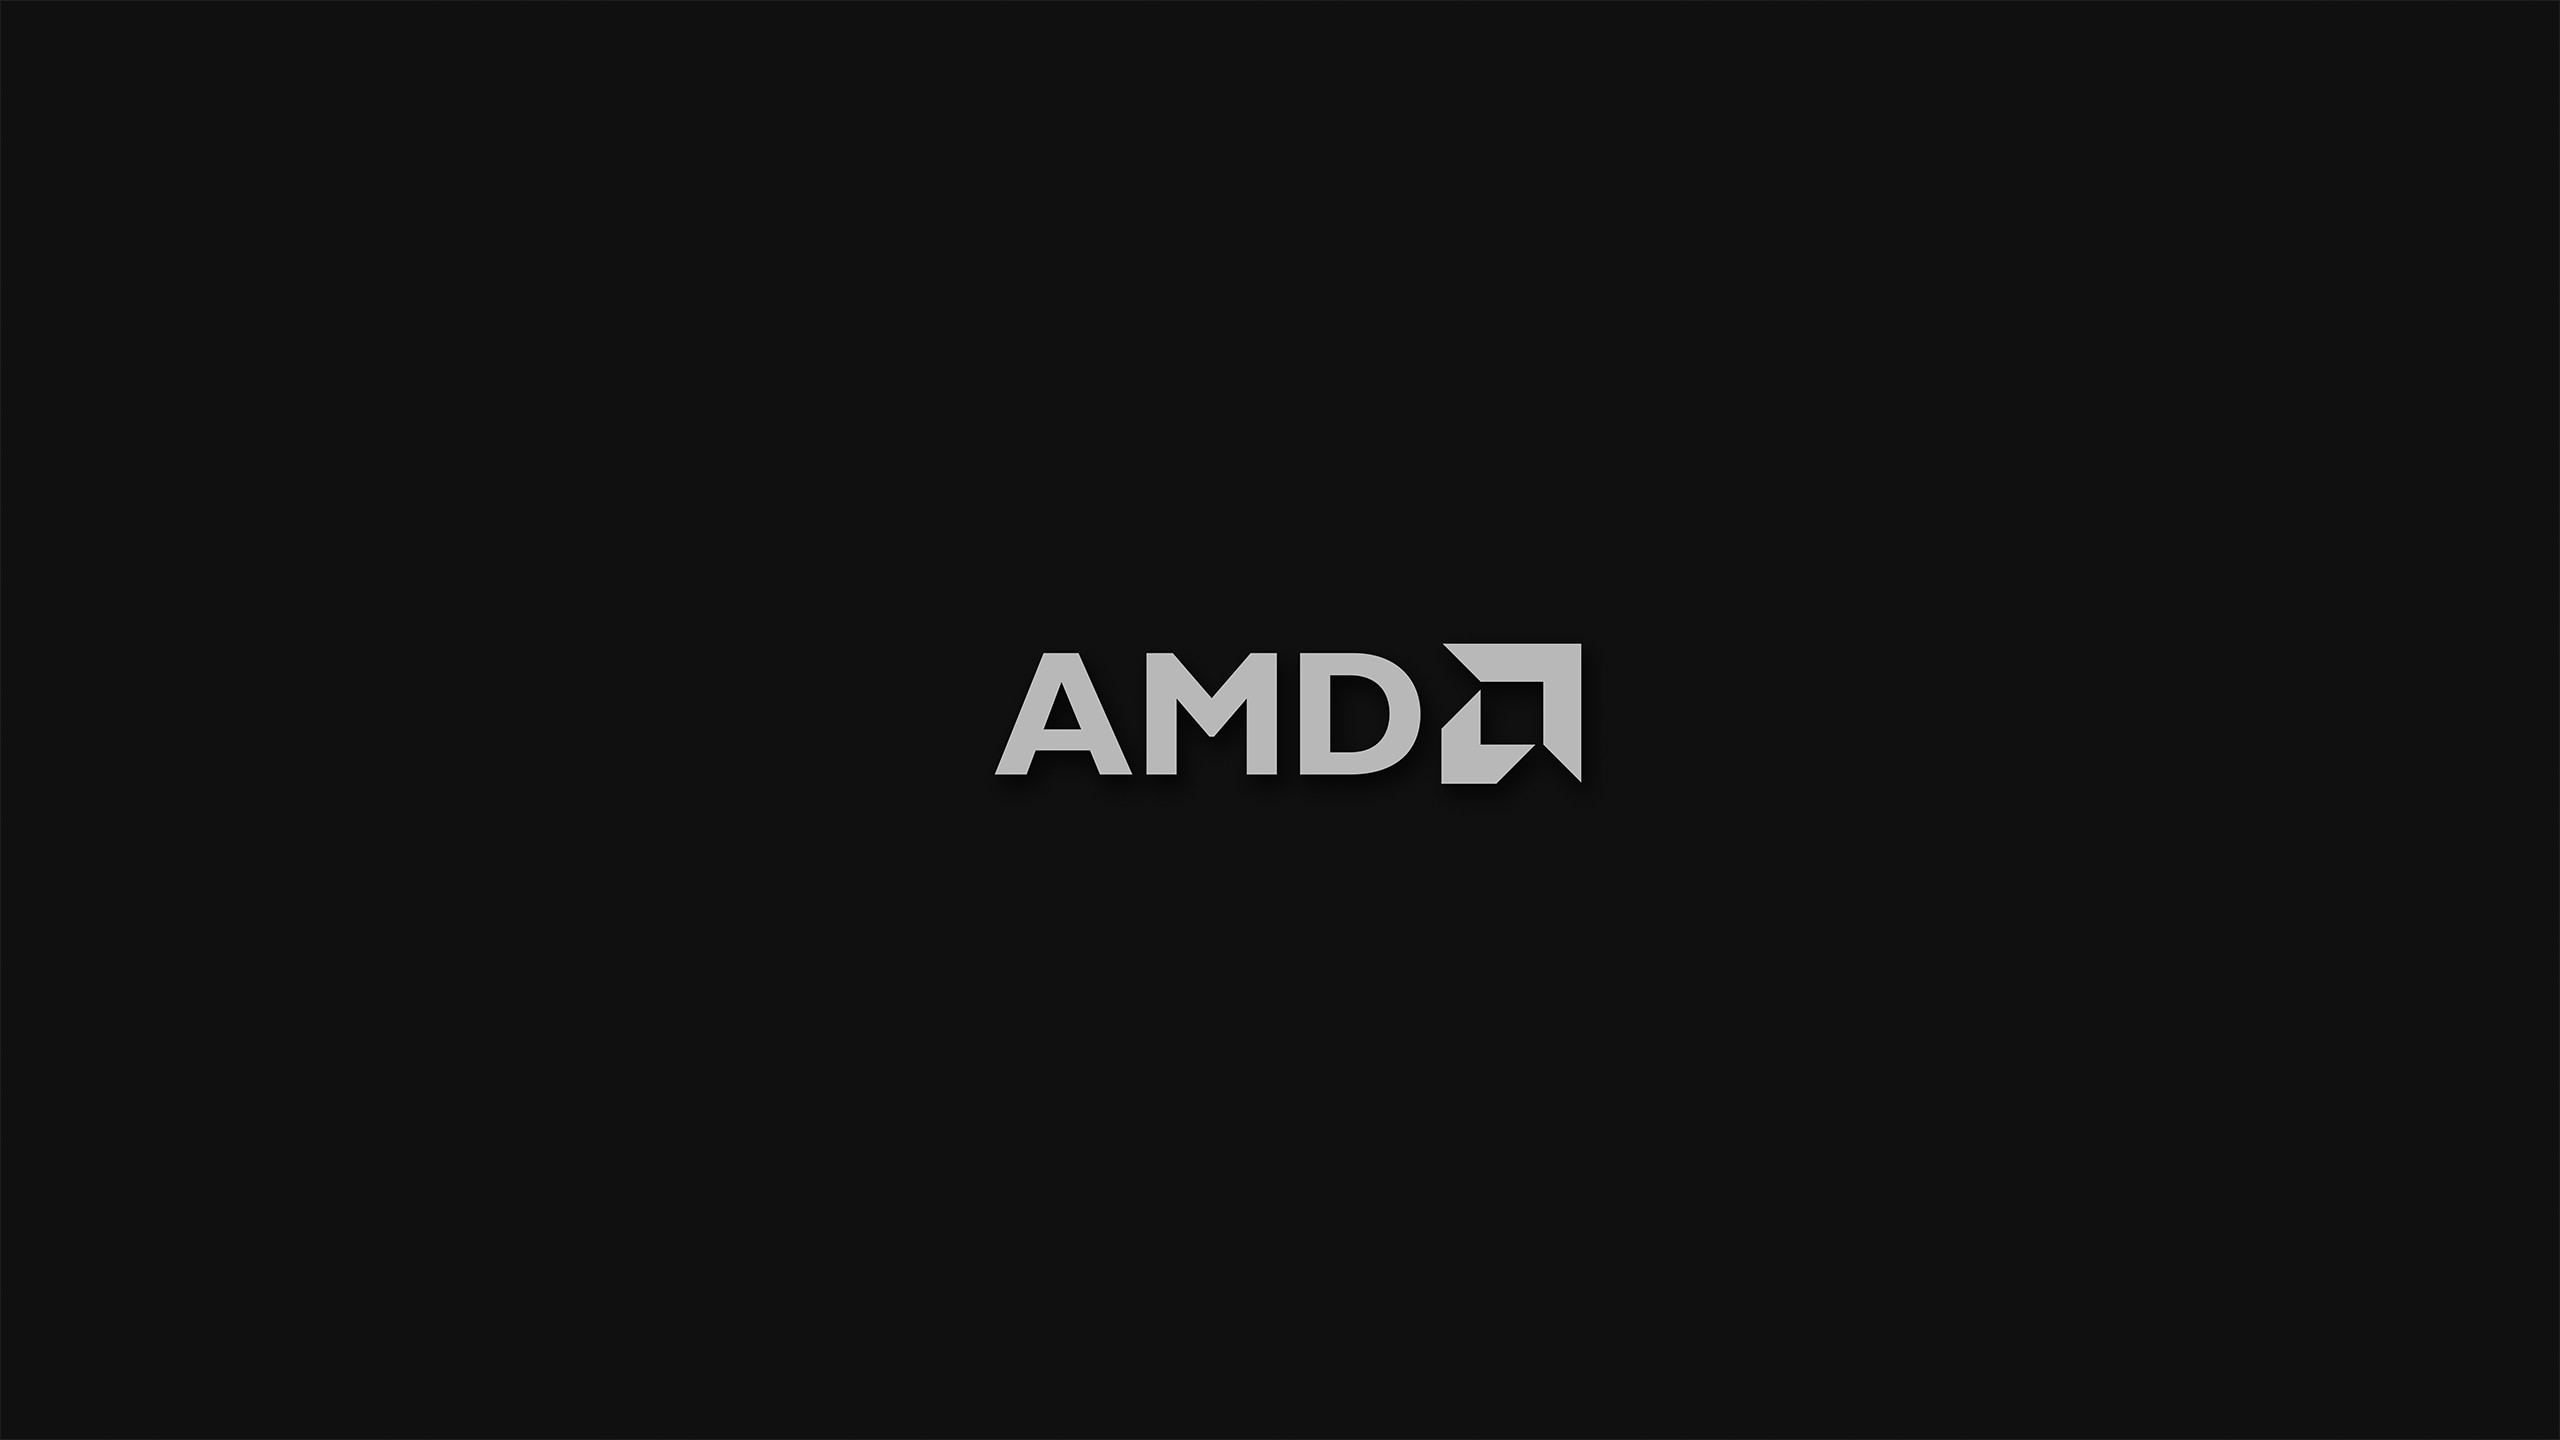 AMD, Black background, Minimalism, Logo Wallpaper HD / Desktop and Mobile Background